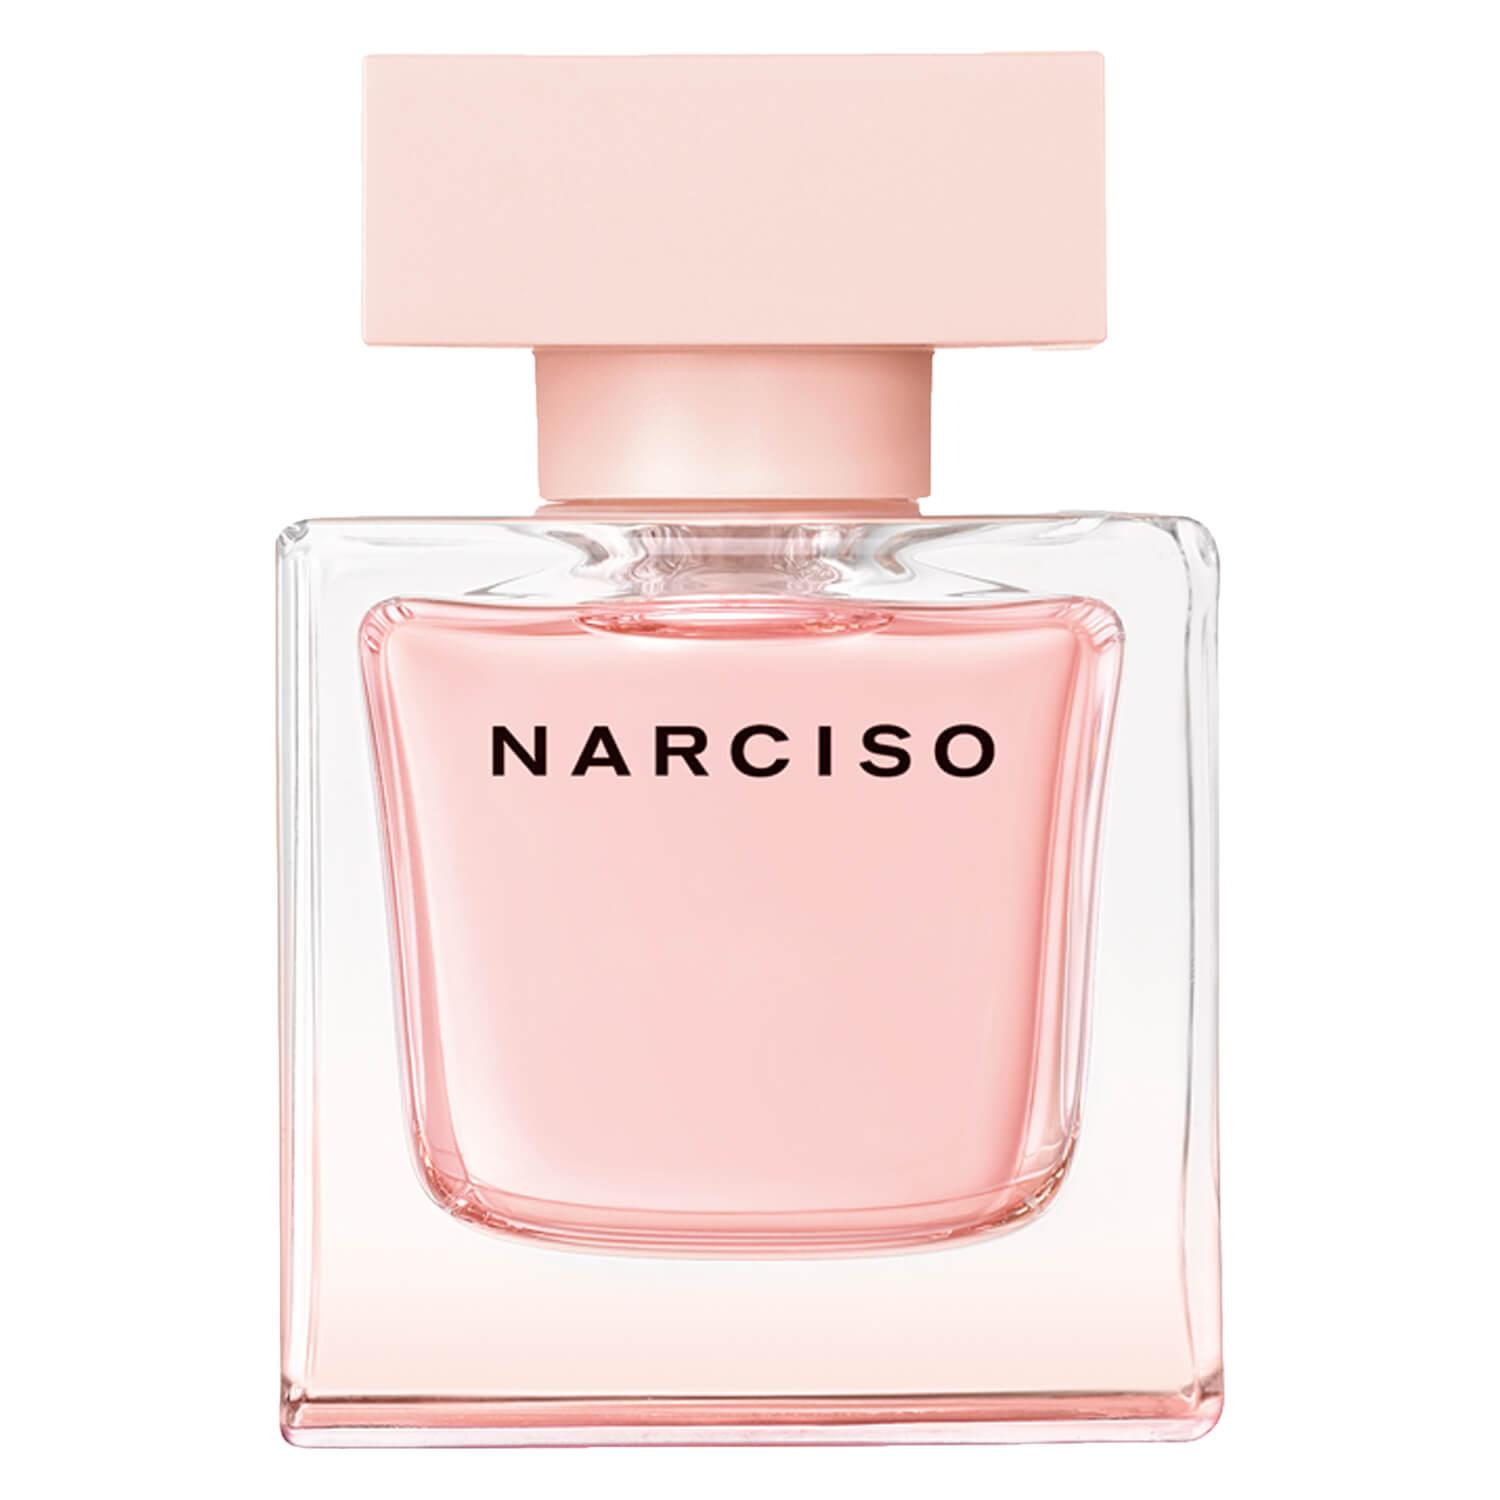 Narciso - Cristal Eau de Parfum